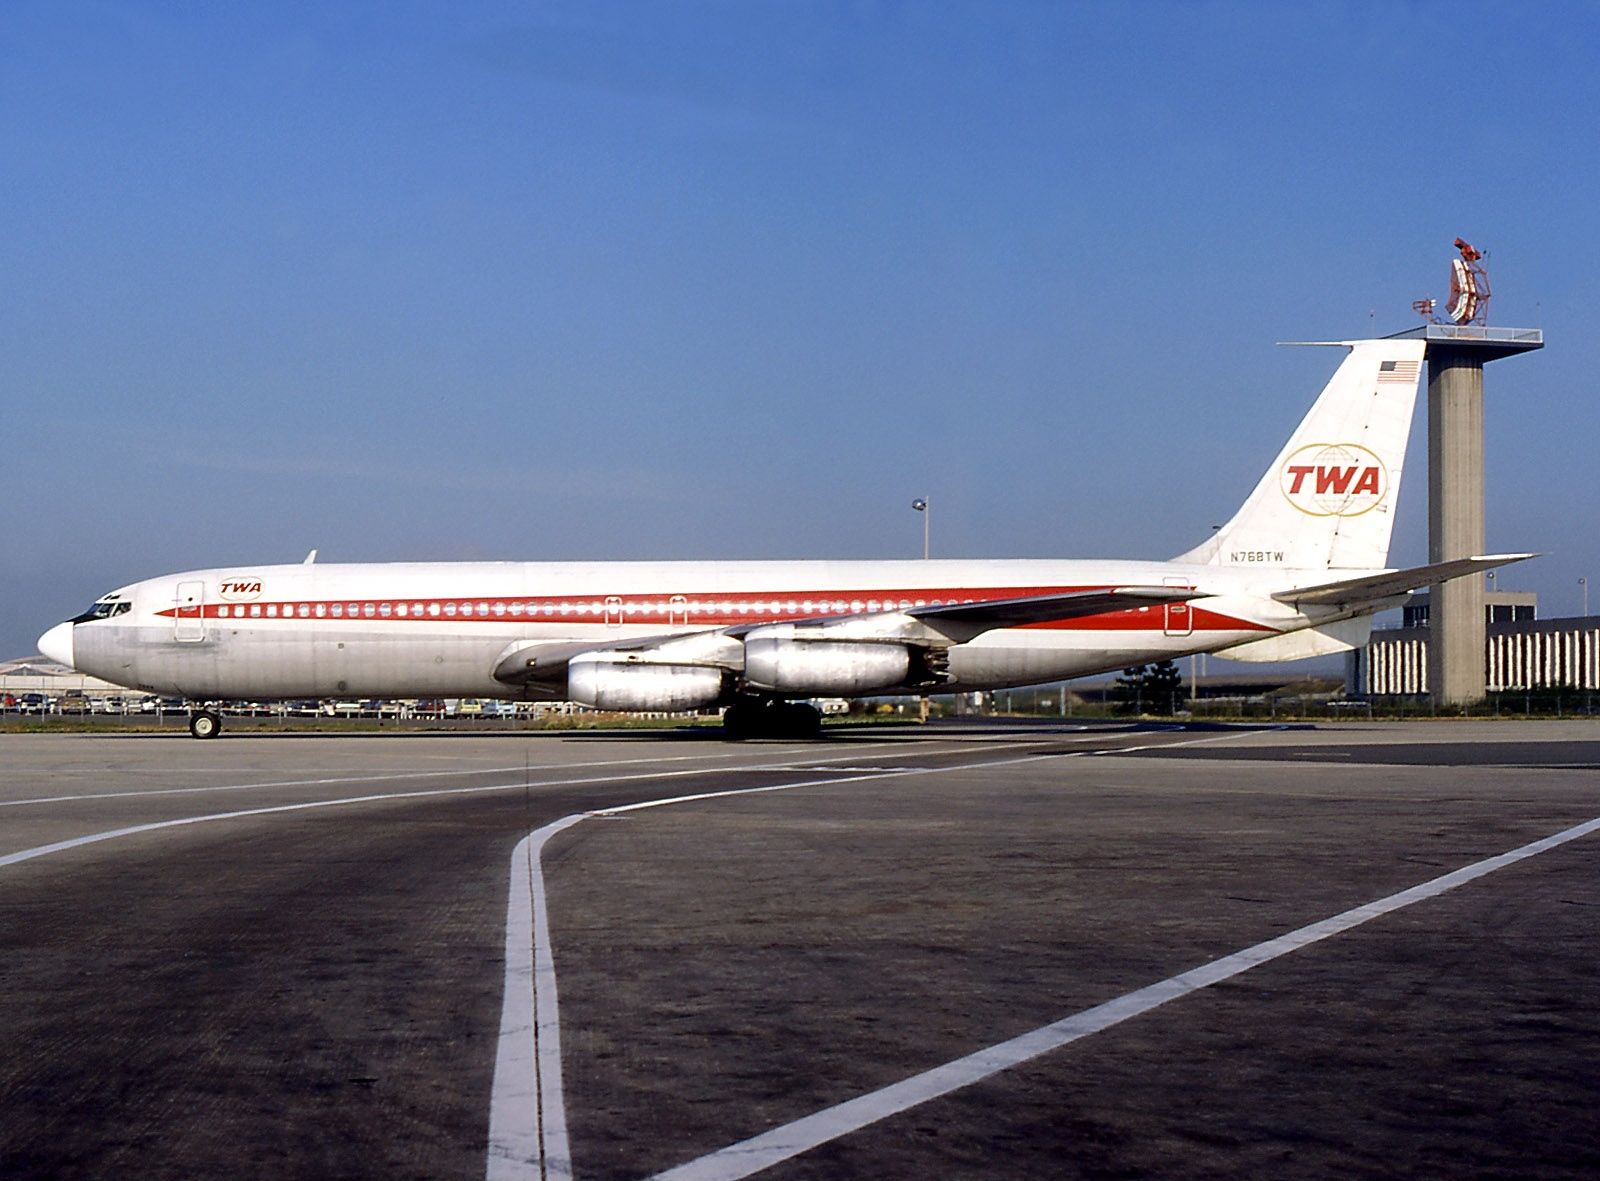 CAT-UXO - Twa flight 841 1974